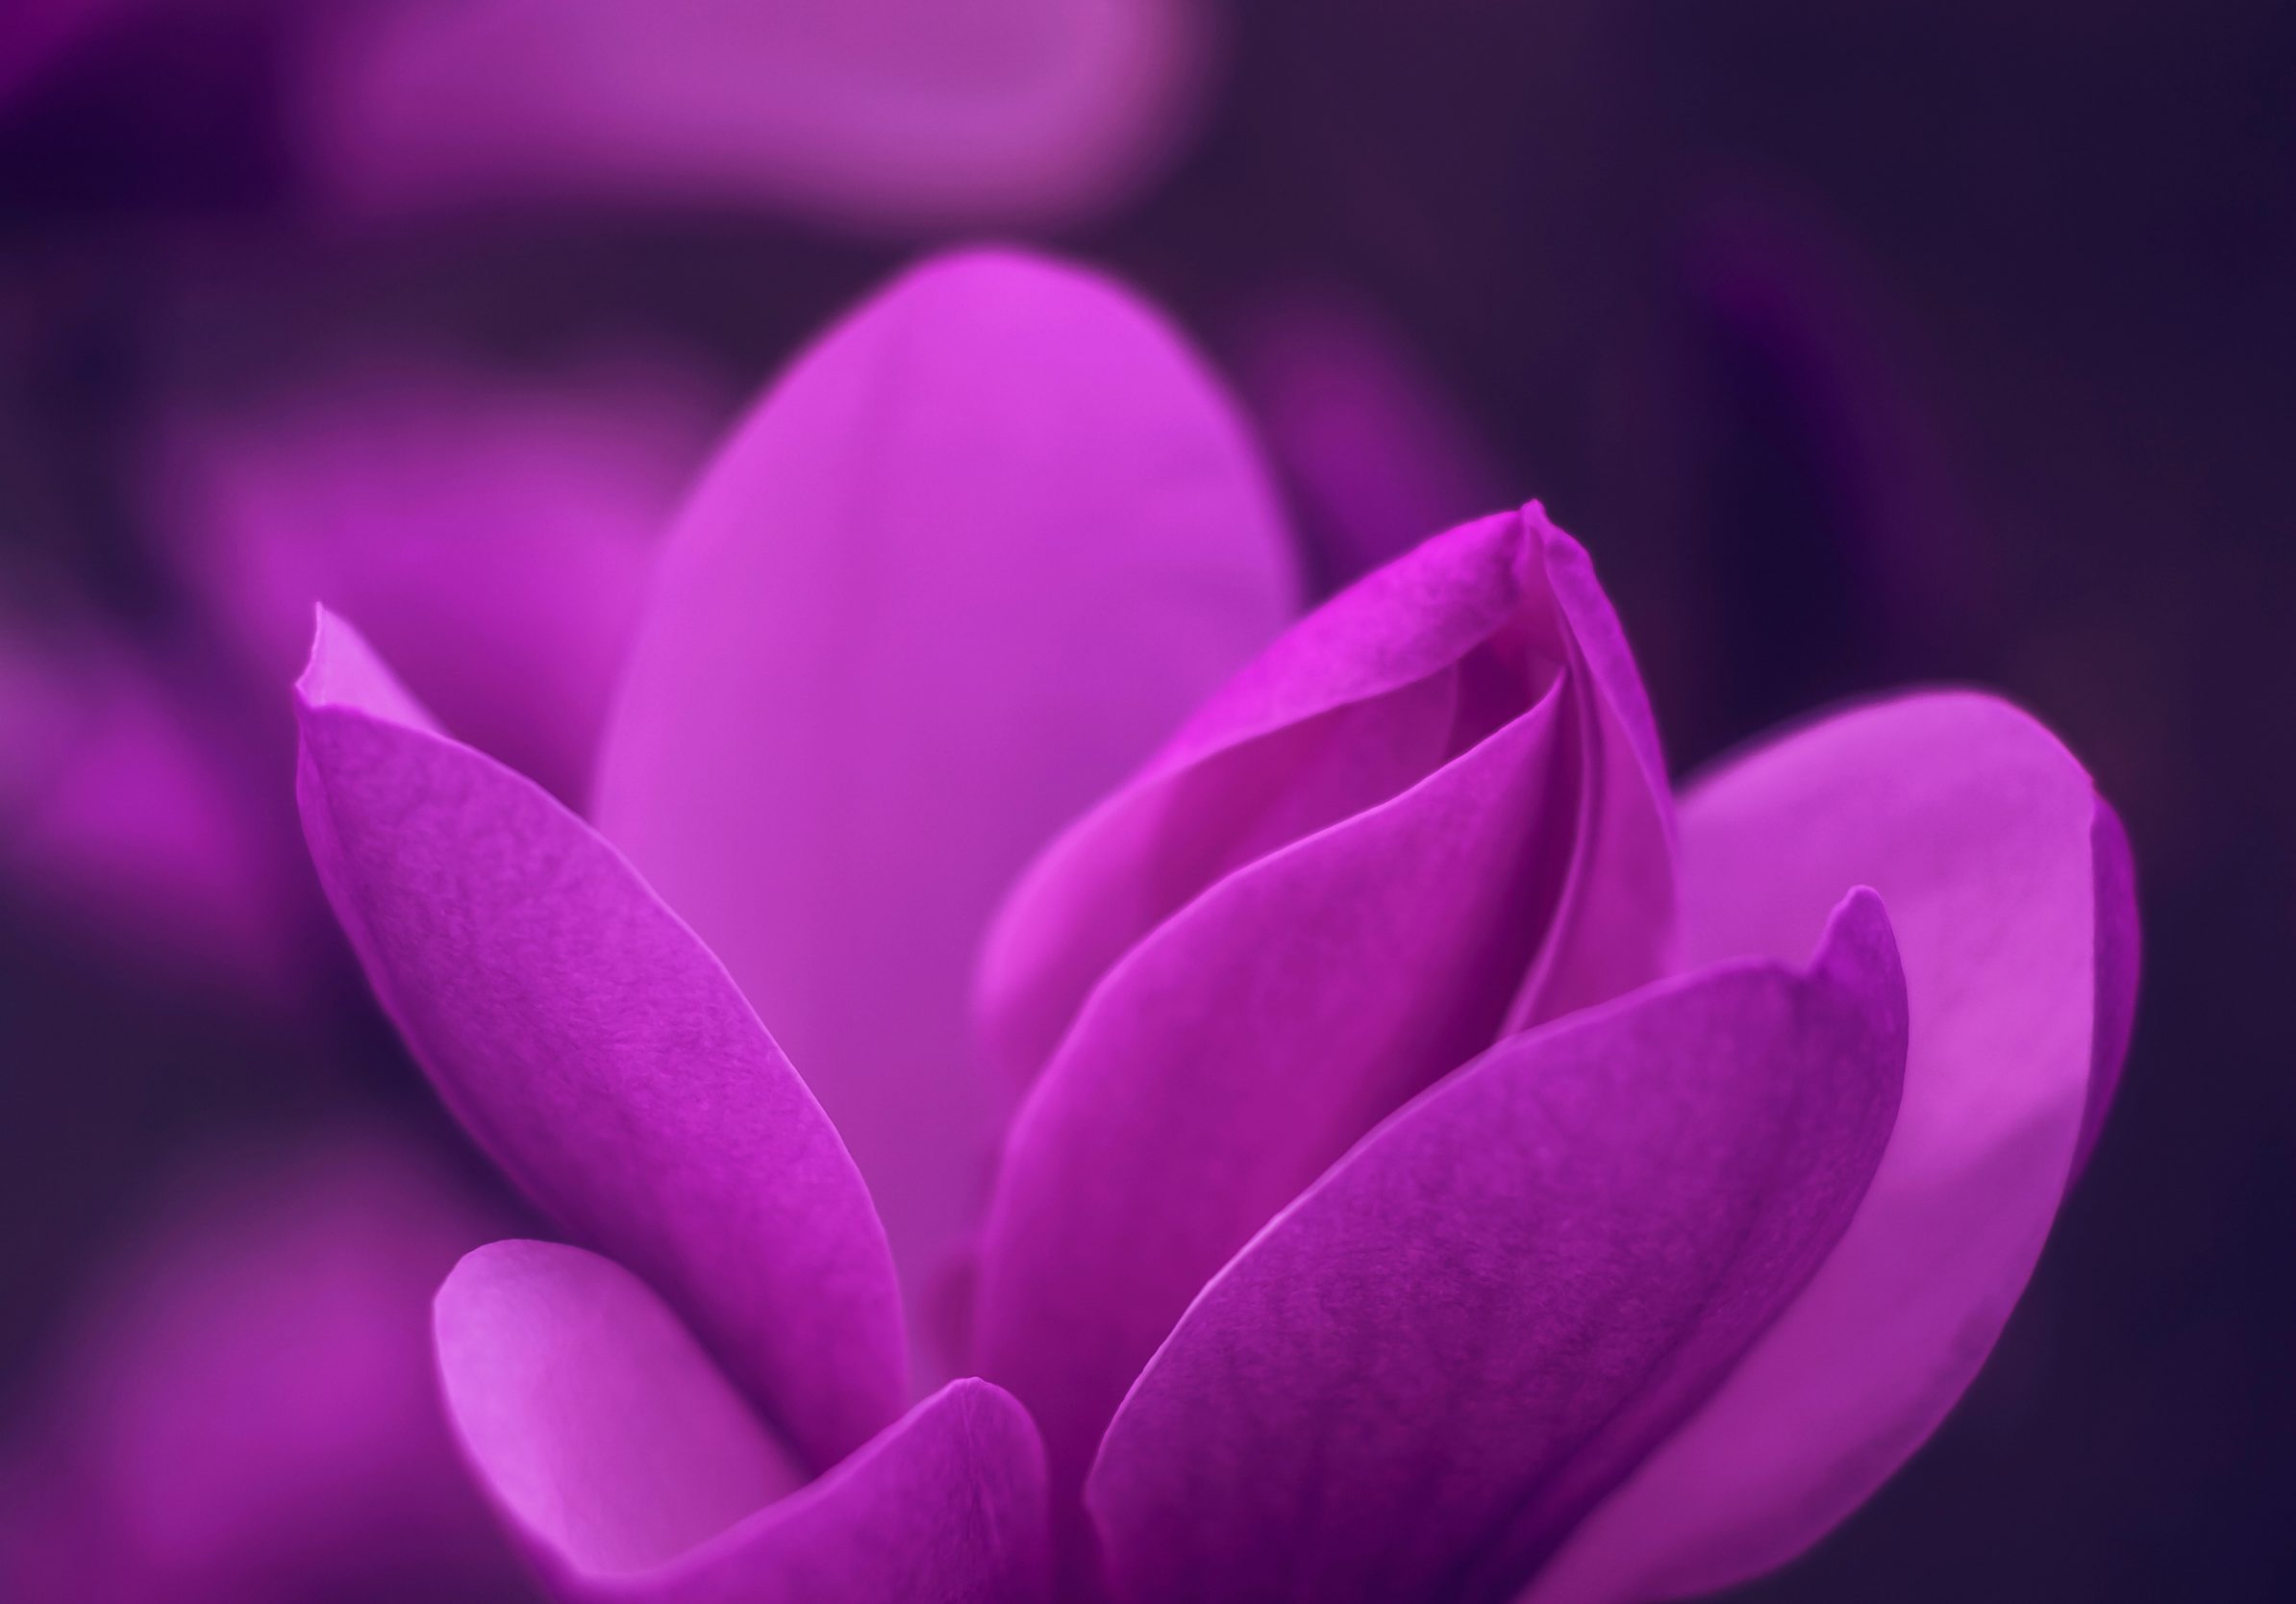 2388x1668 iPad Pro wallpapers Purple Bloom Blossom Petaled Flower iPad Wallpaper 2388x1668 pixels resolution